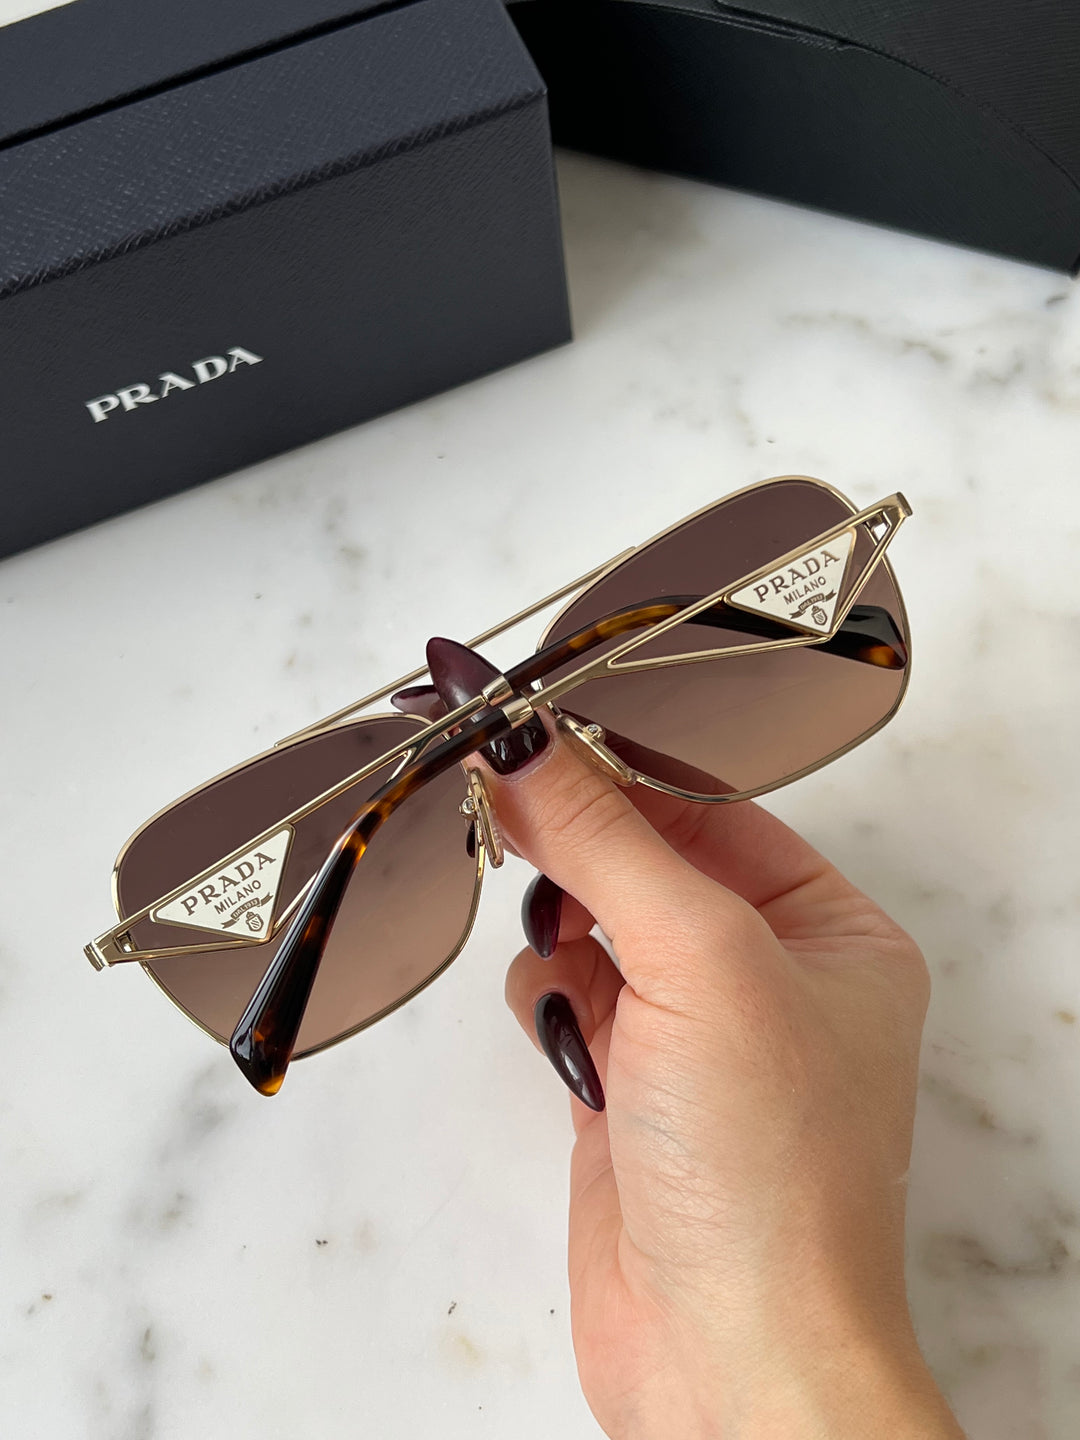 Prada PR A50S Sunglasses in Gold Brown